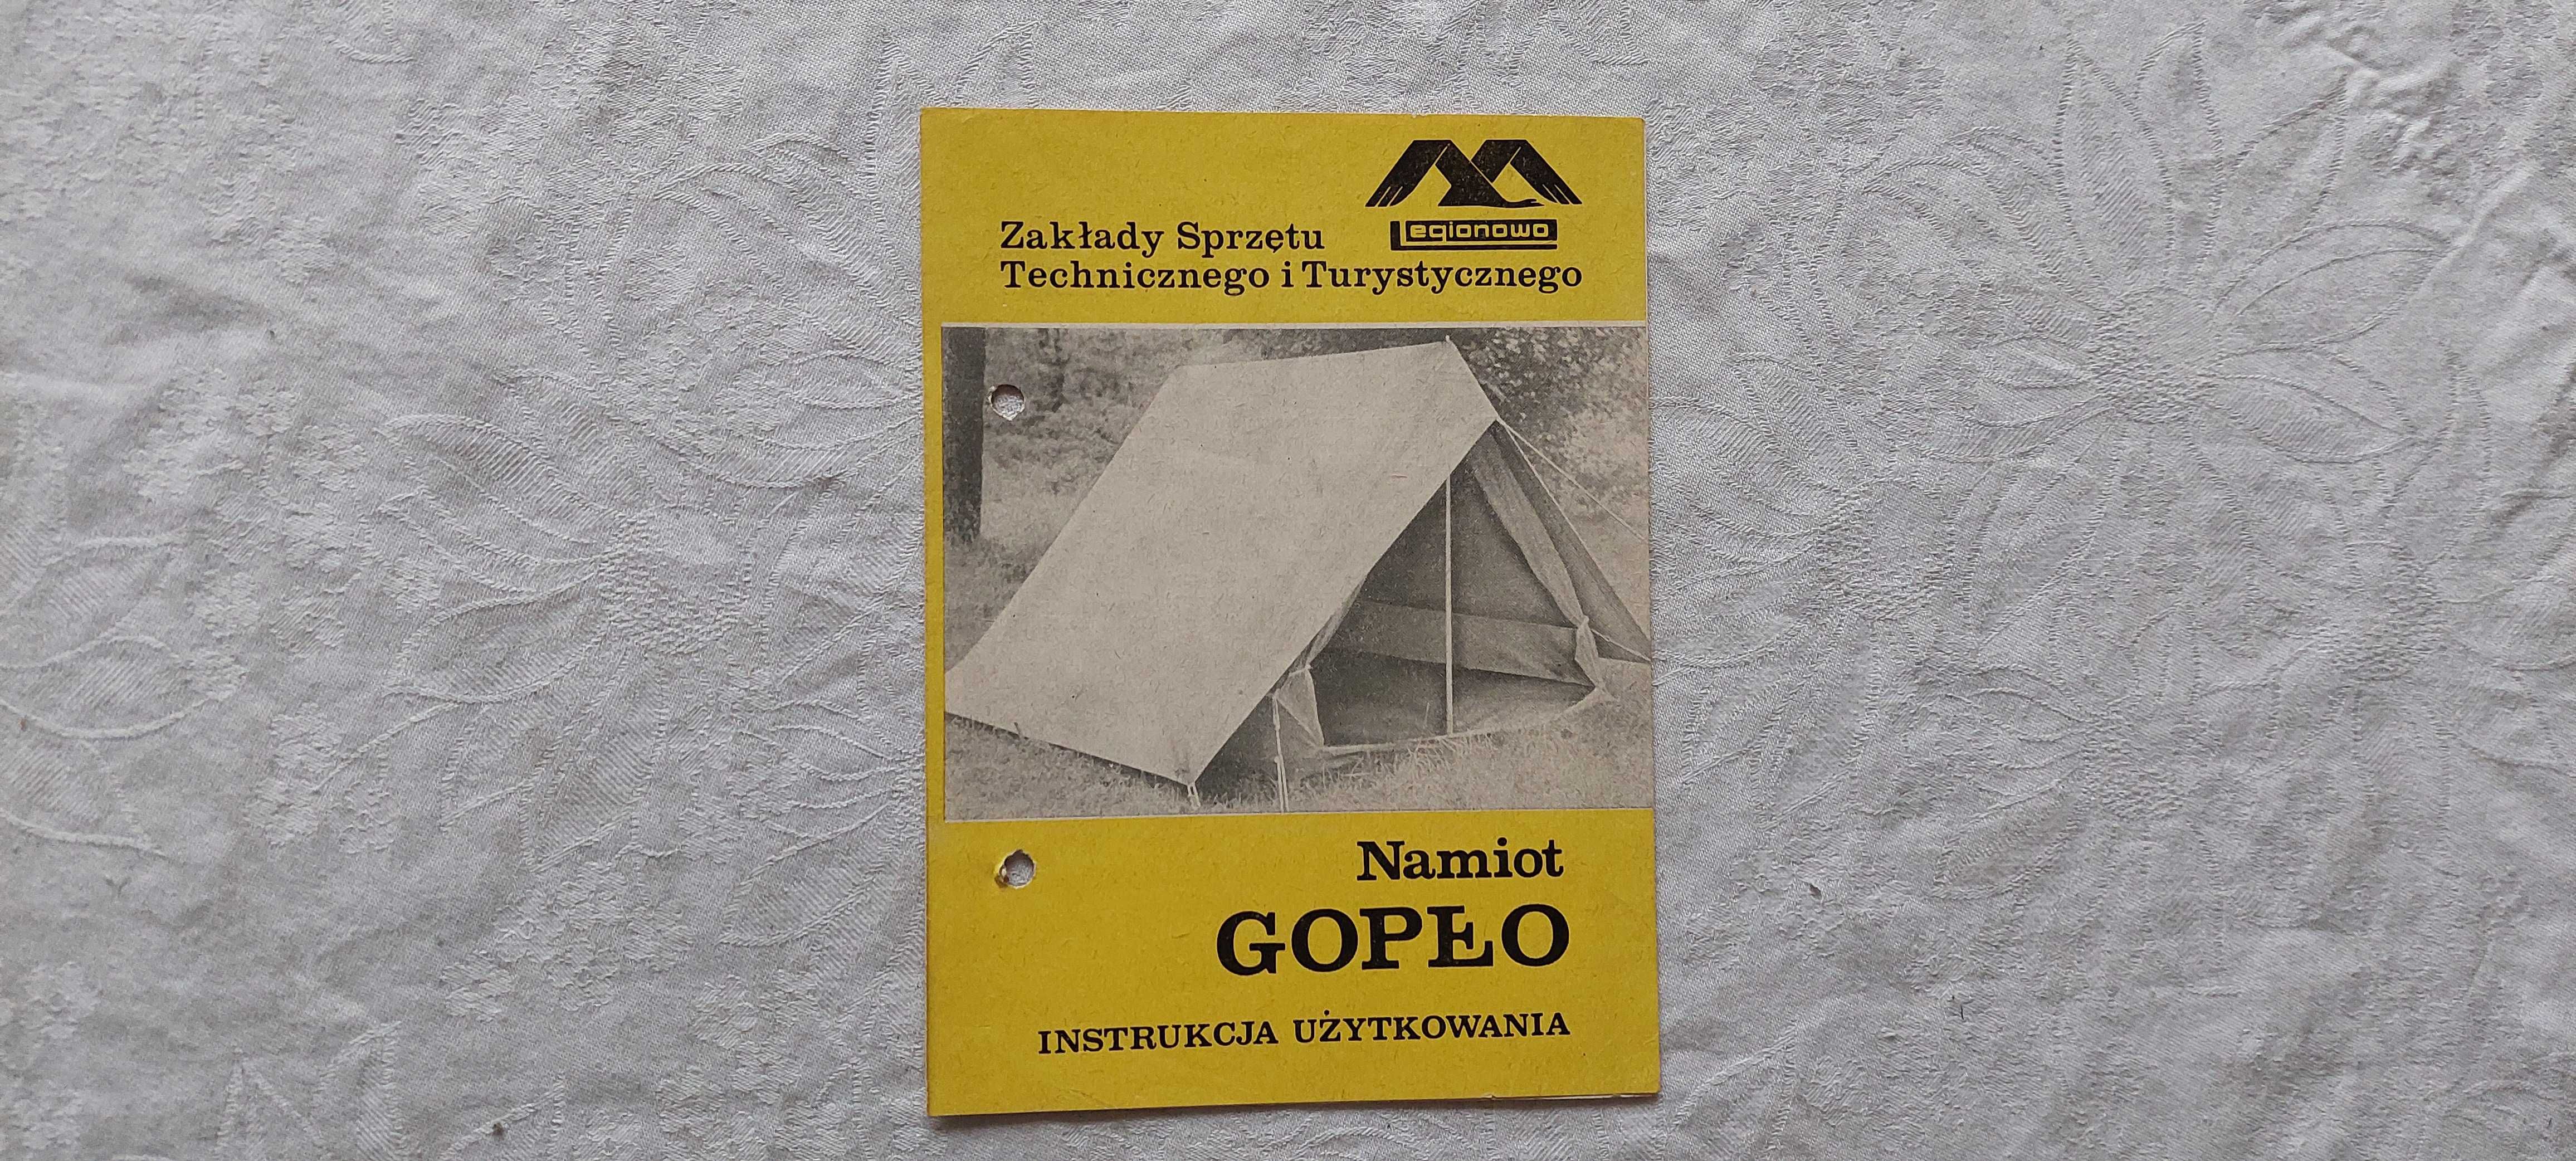 Instrukcja obsługi namiotu Gopło (1969 r.)